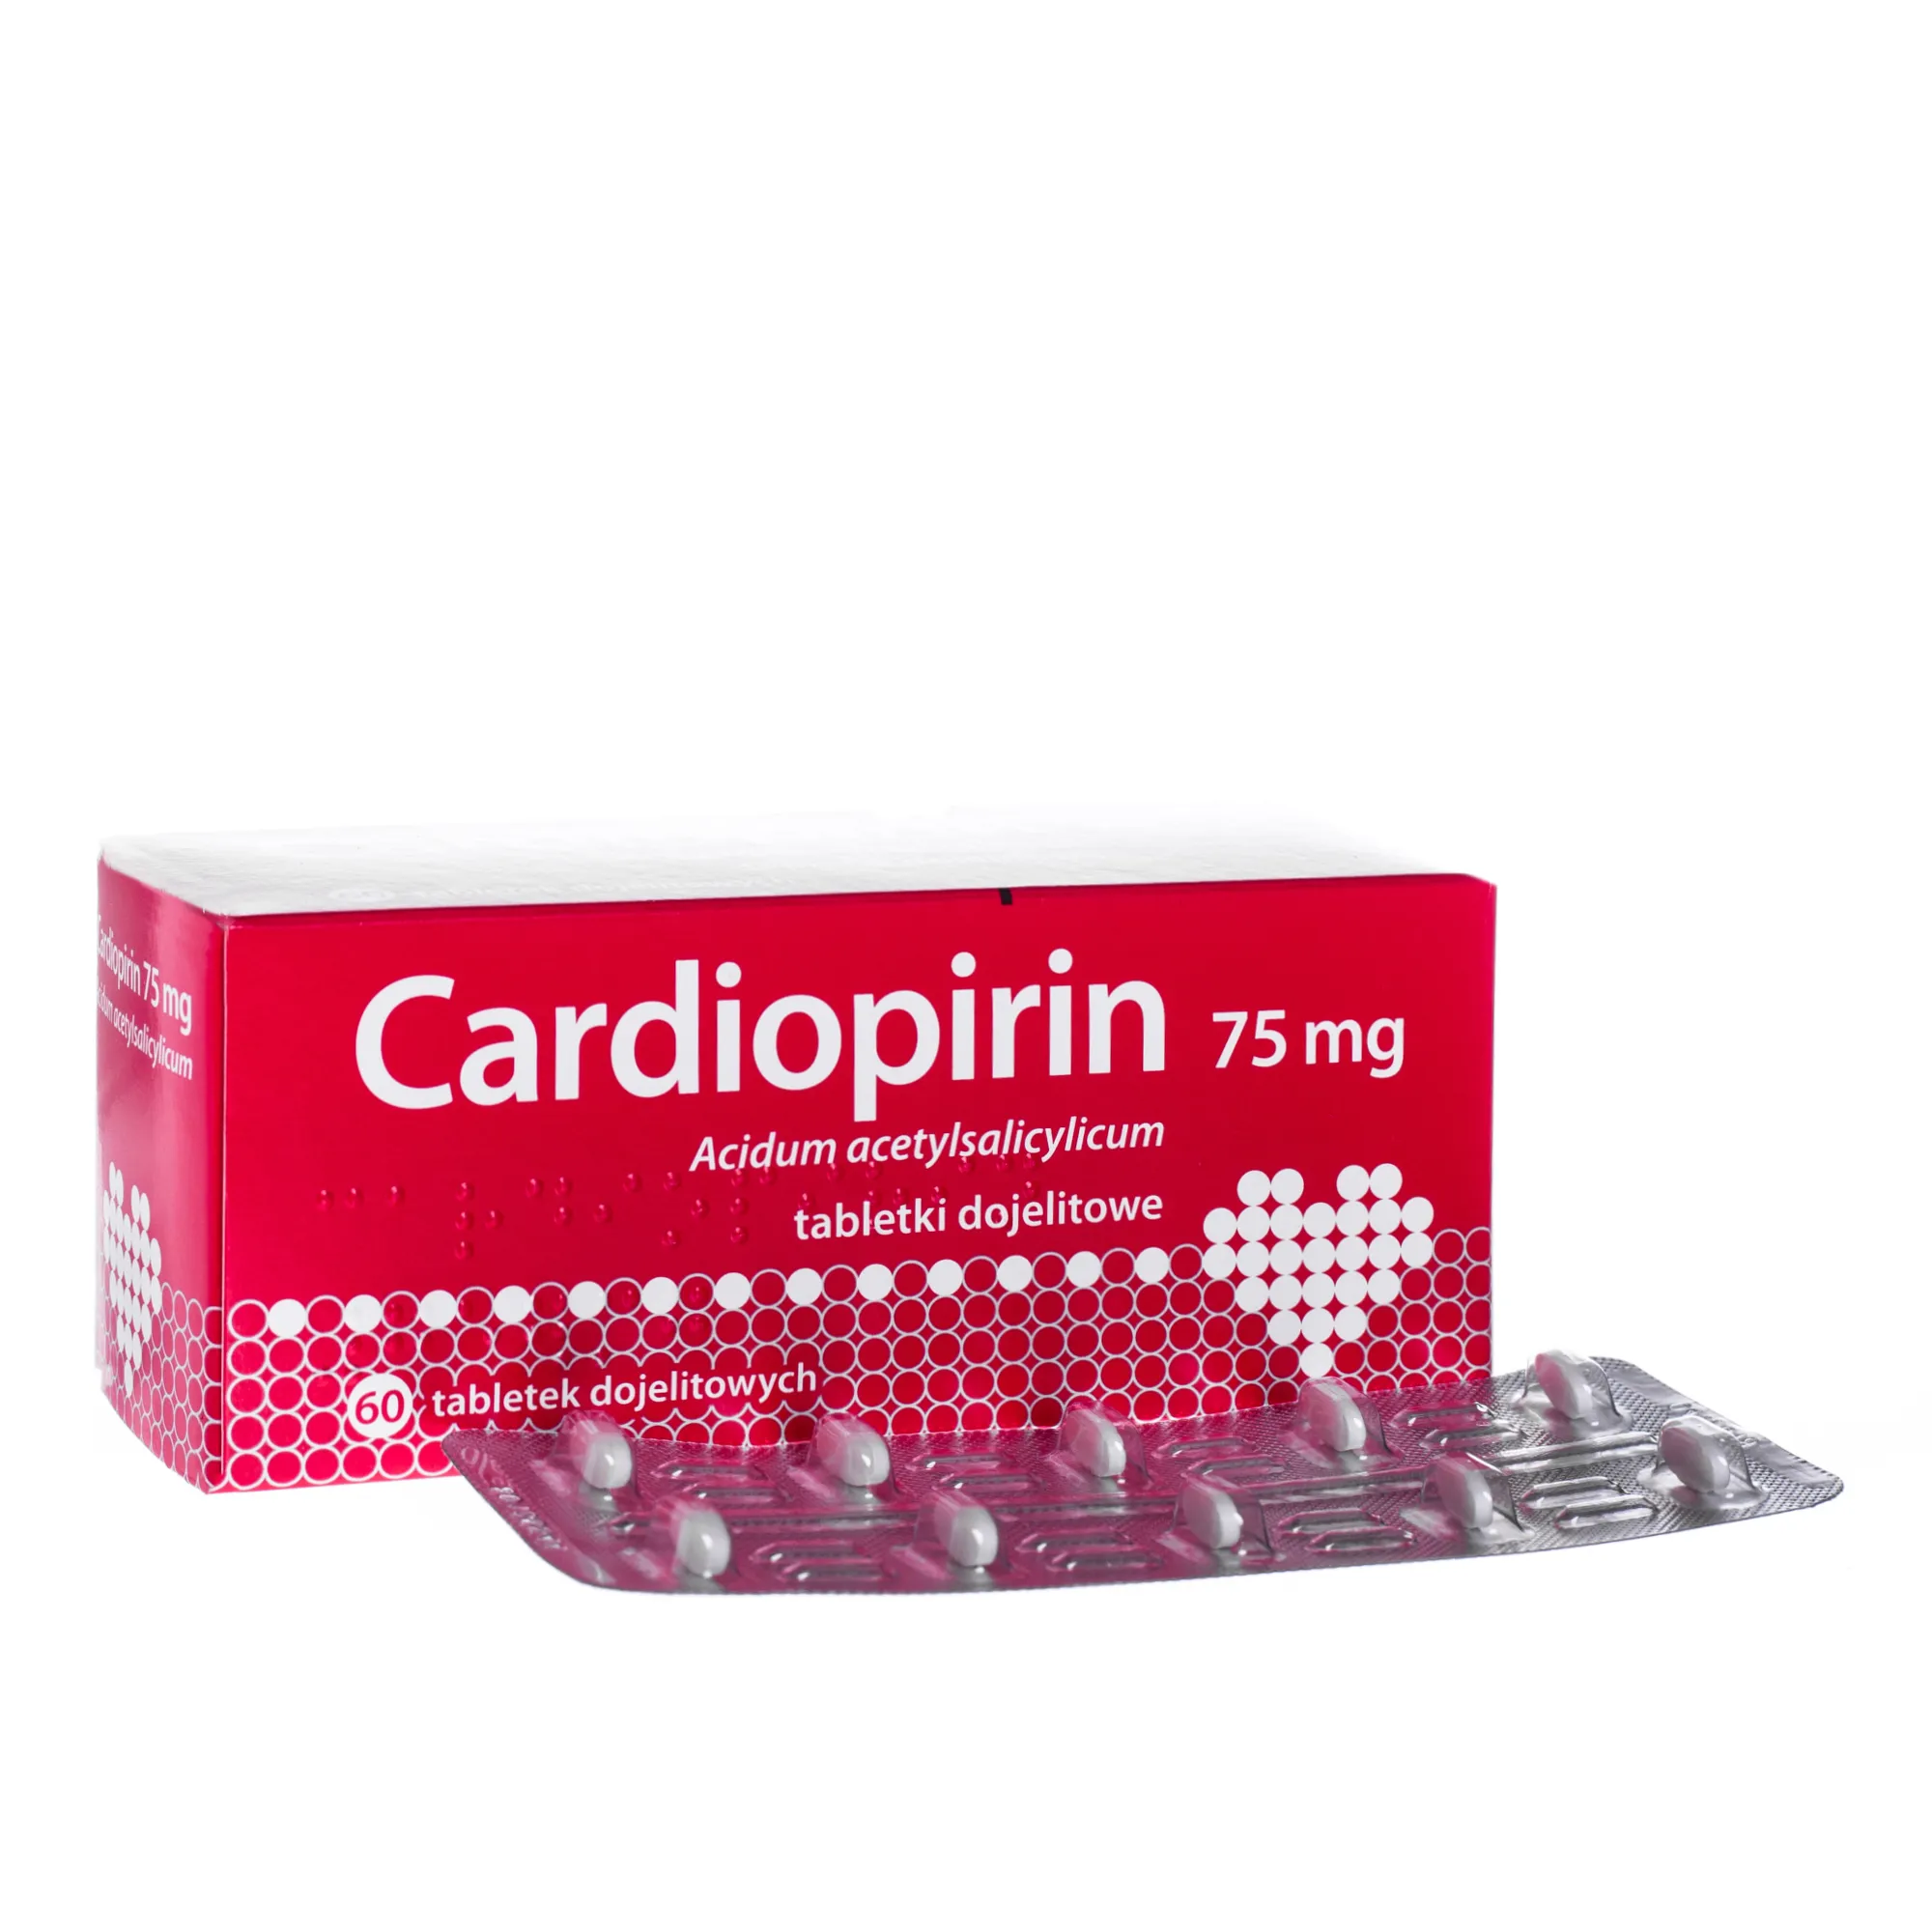 Cardiopirin, 75 mg, tabletki dojelitowe, 60 tabletek 